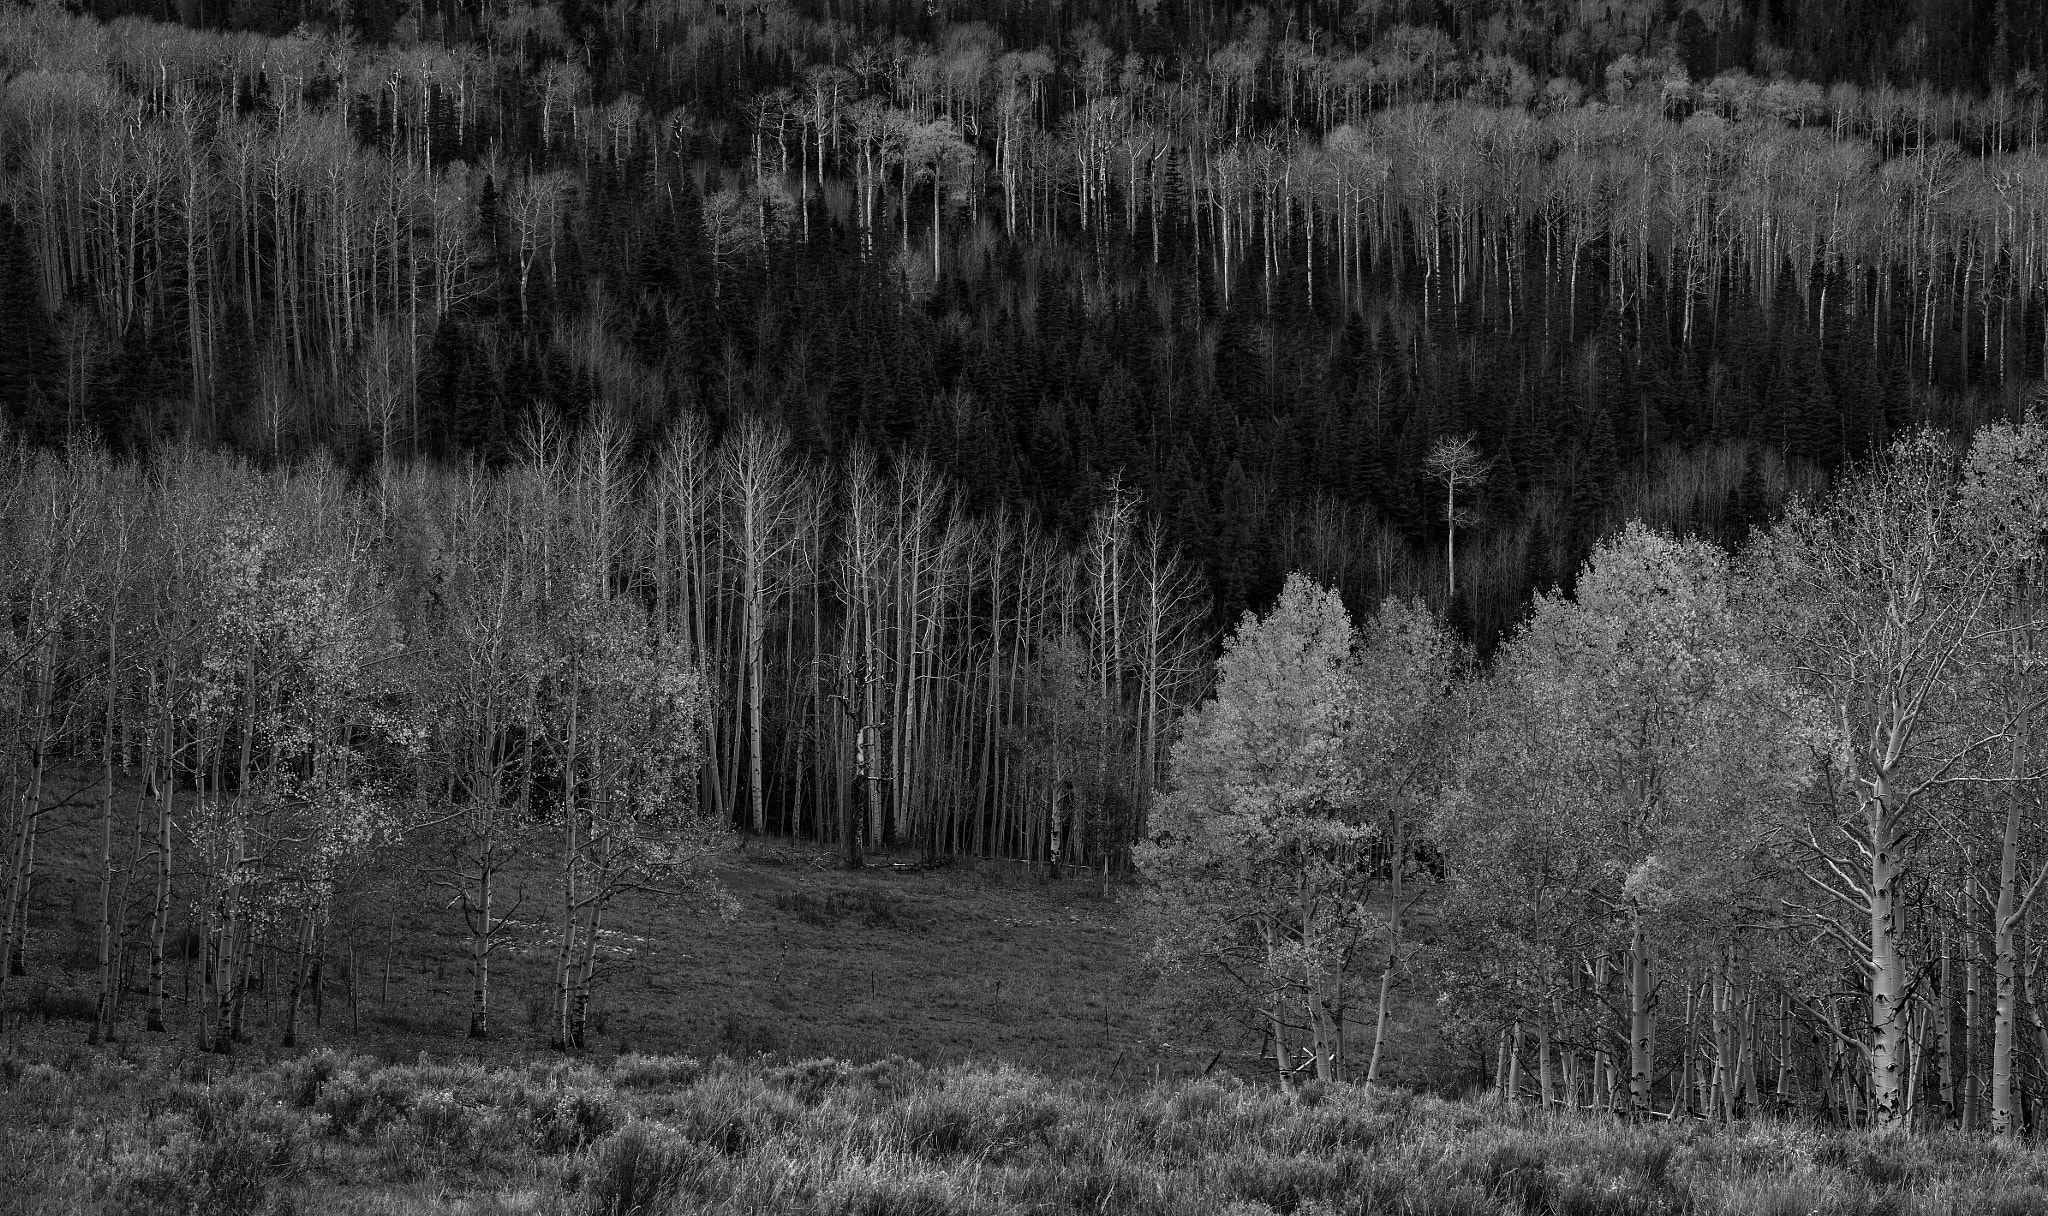 Nikon D800E sample photo. Colorado - aspen grove photography